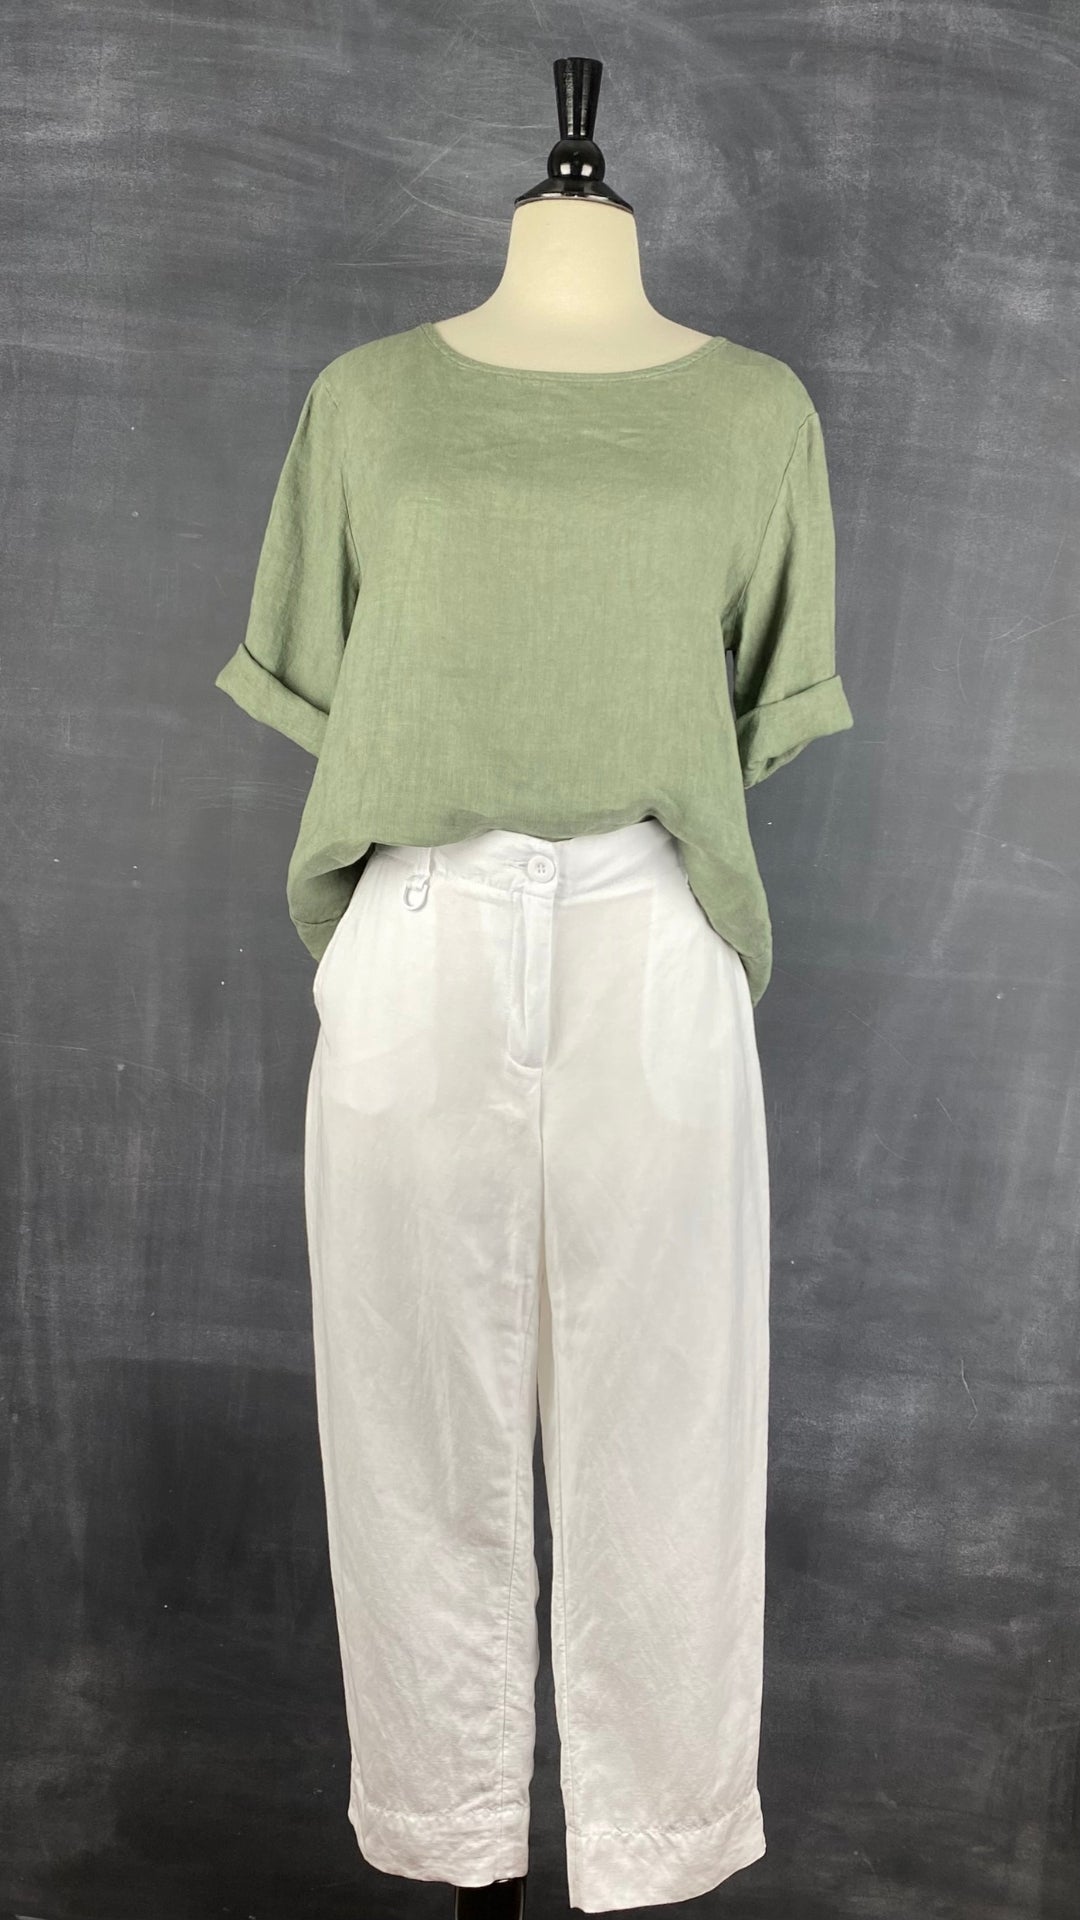 Pantalon blanc longueur 3/4 en mélange de lin Melanie Lyne, taille 4. Vue de l'agencement avec le haut boutonné en lin olive.